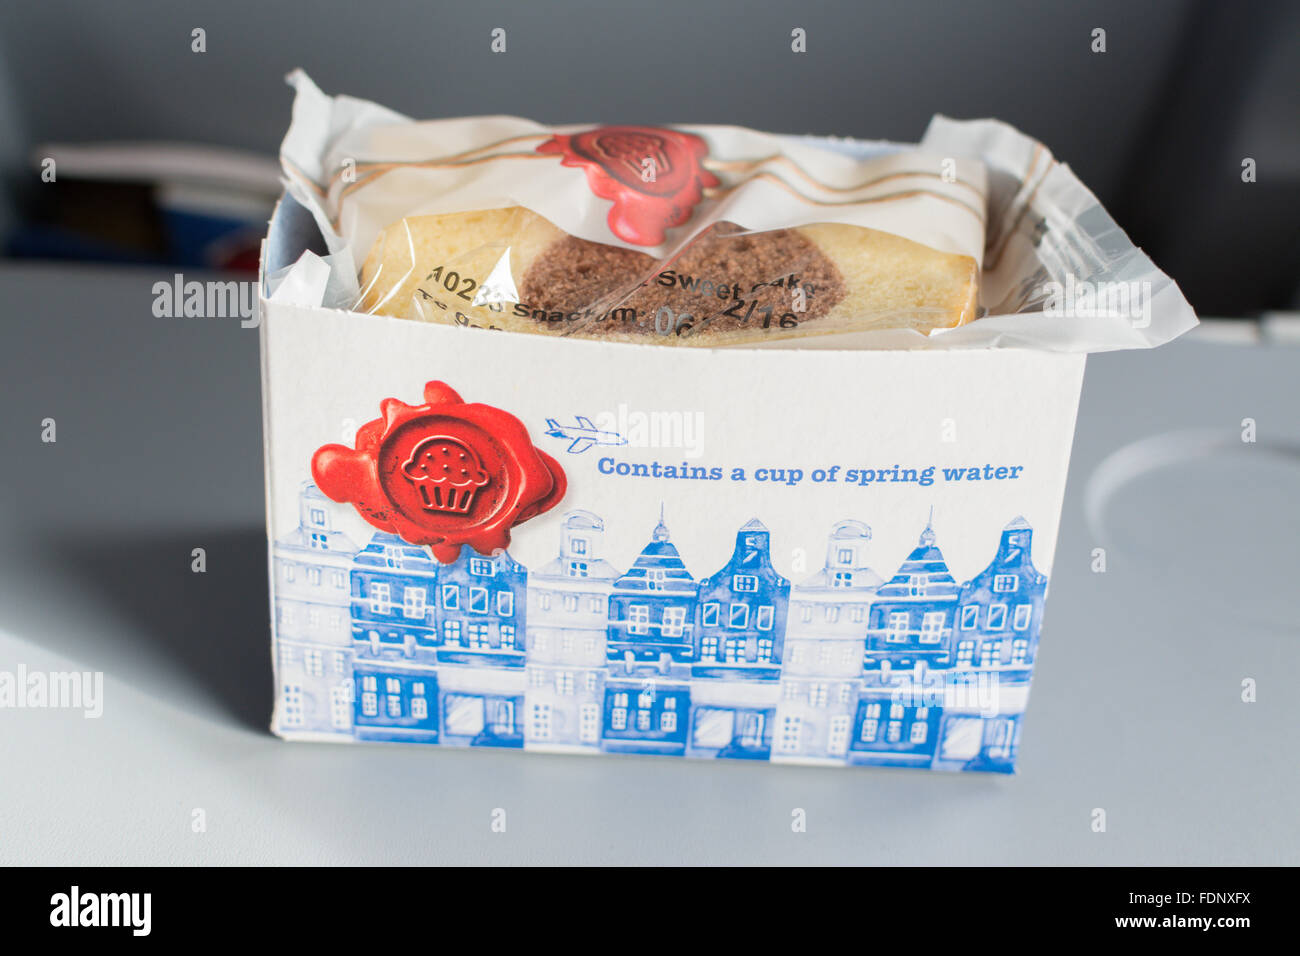 Refrigerio cortesía de bizcocho y agua suministrada en vuelo de KLM entre Amsterdam y Estocolmo Foto de stock